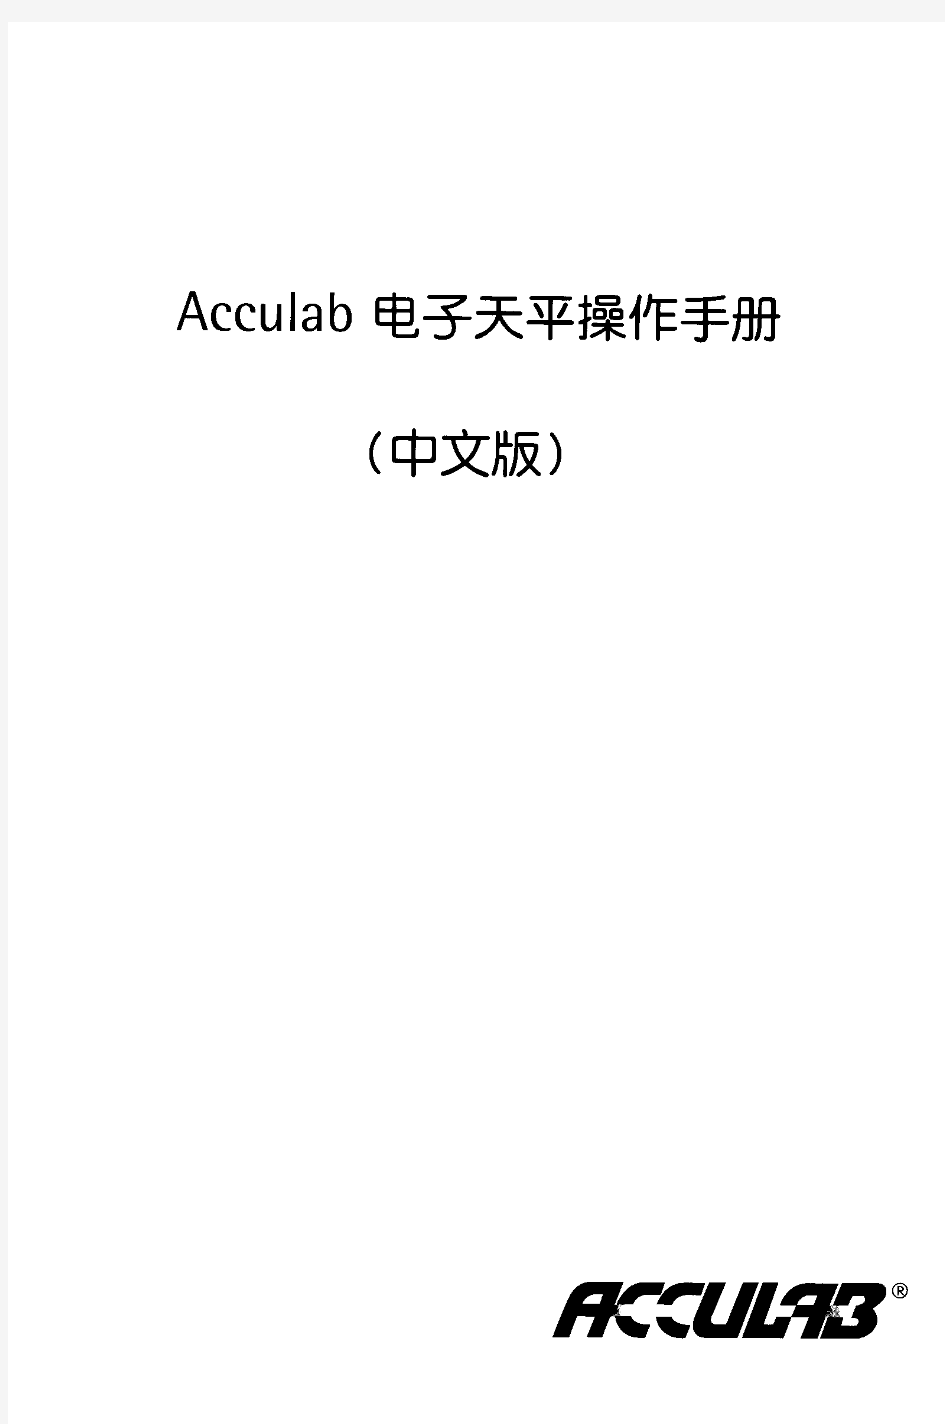 赛多利斯-Acculab电子天平操作说明书